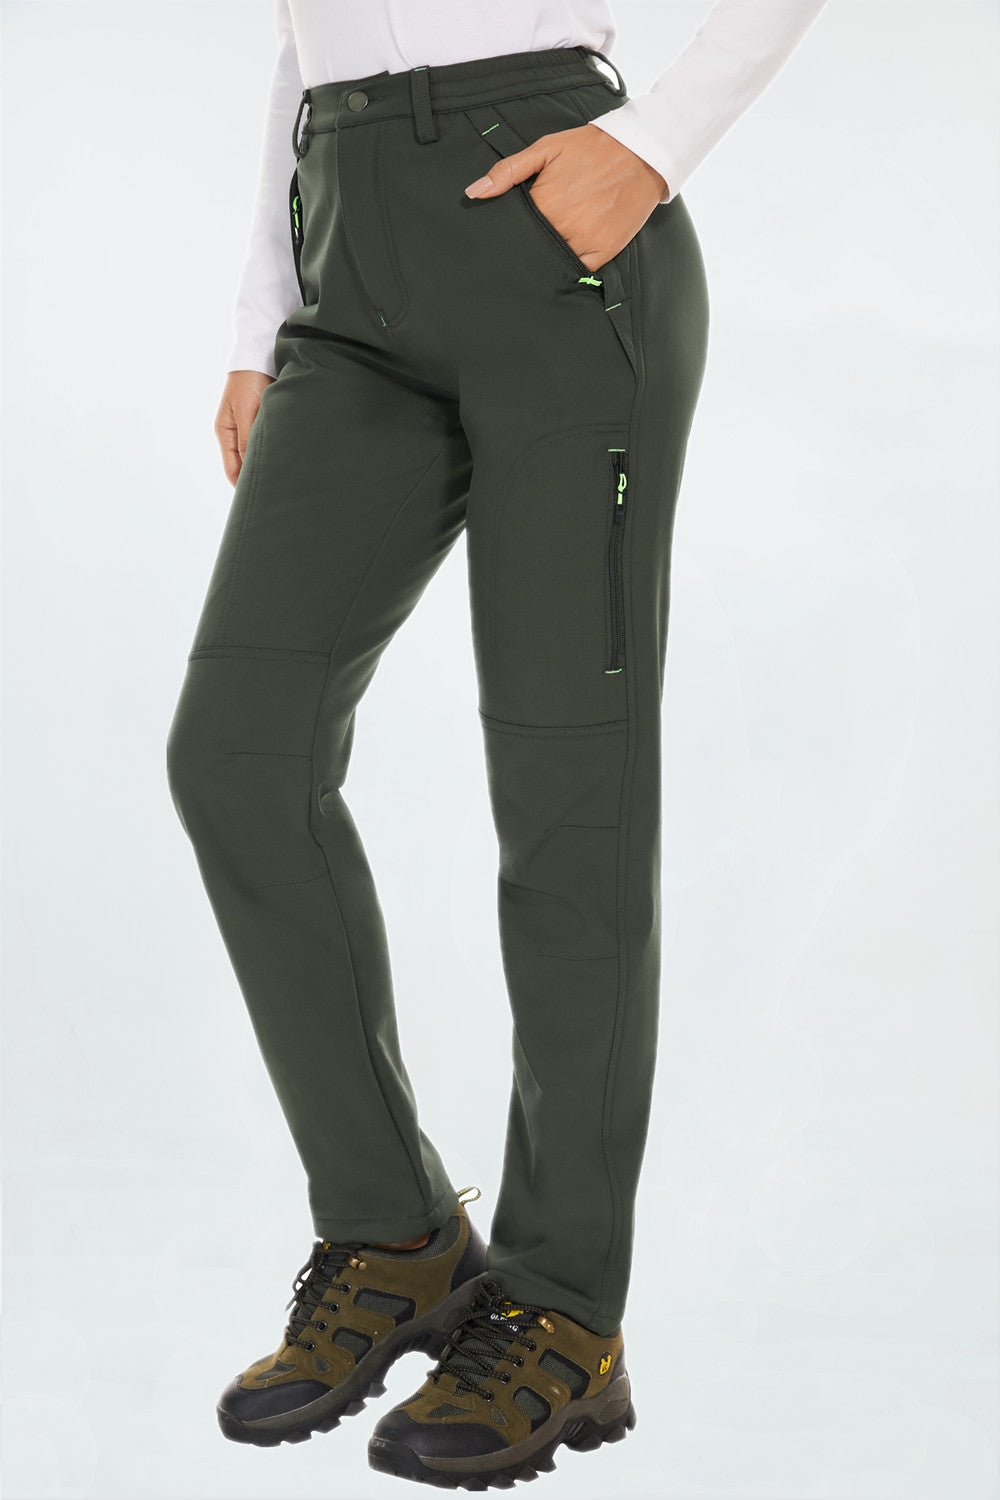 Women's Waterproof Fleece-Lined Hiking Pants with Pockets – PULI